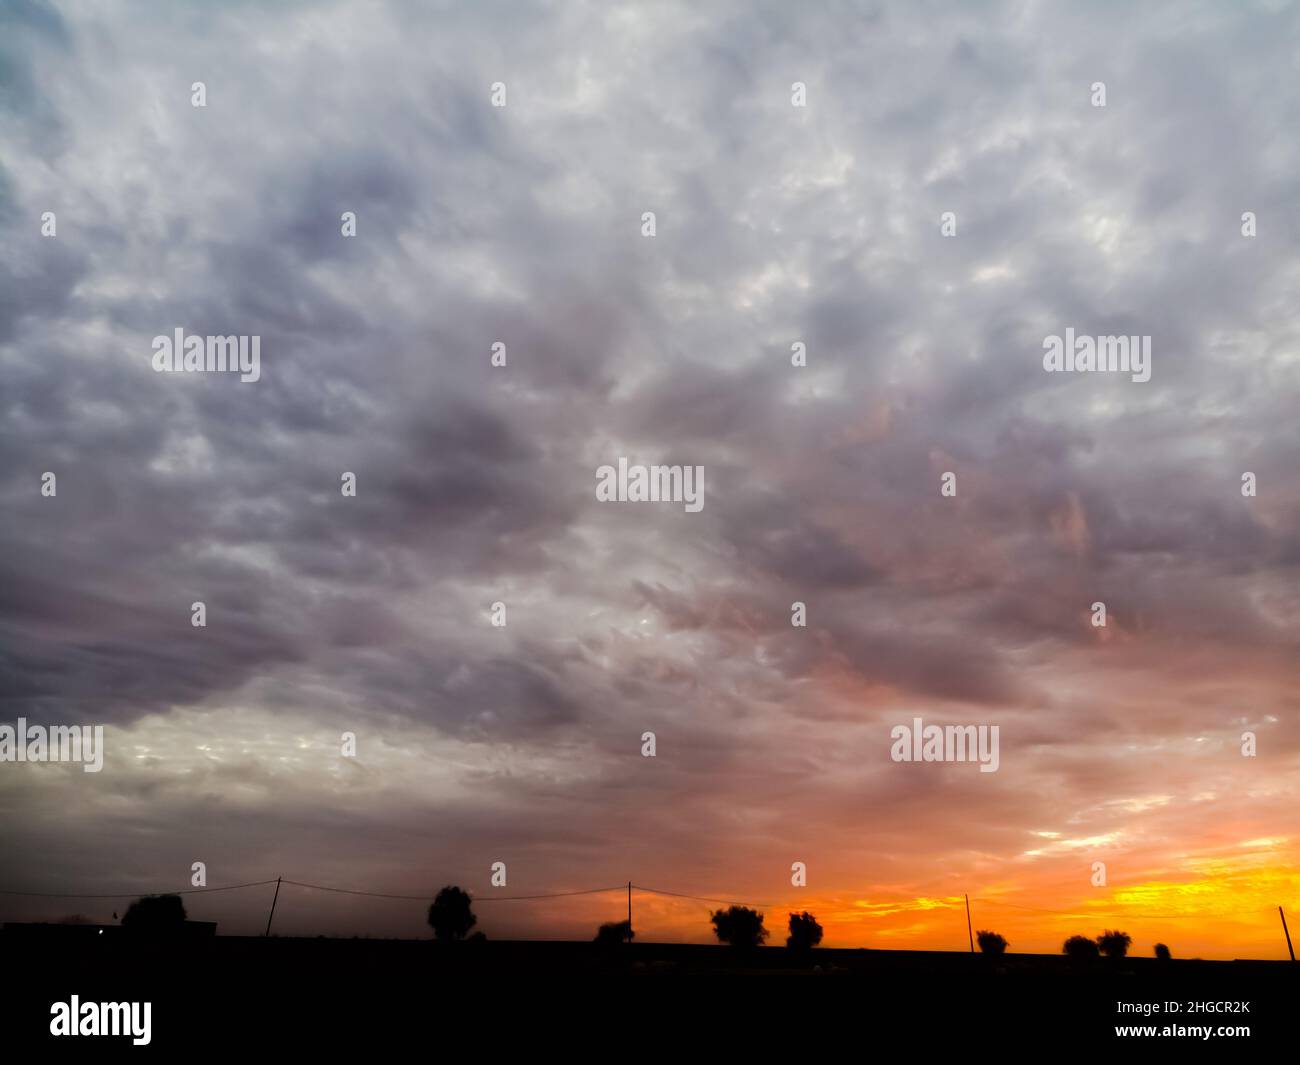 Strom Clouds In The Orange Sky Stock Photo